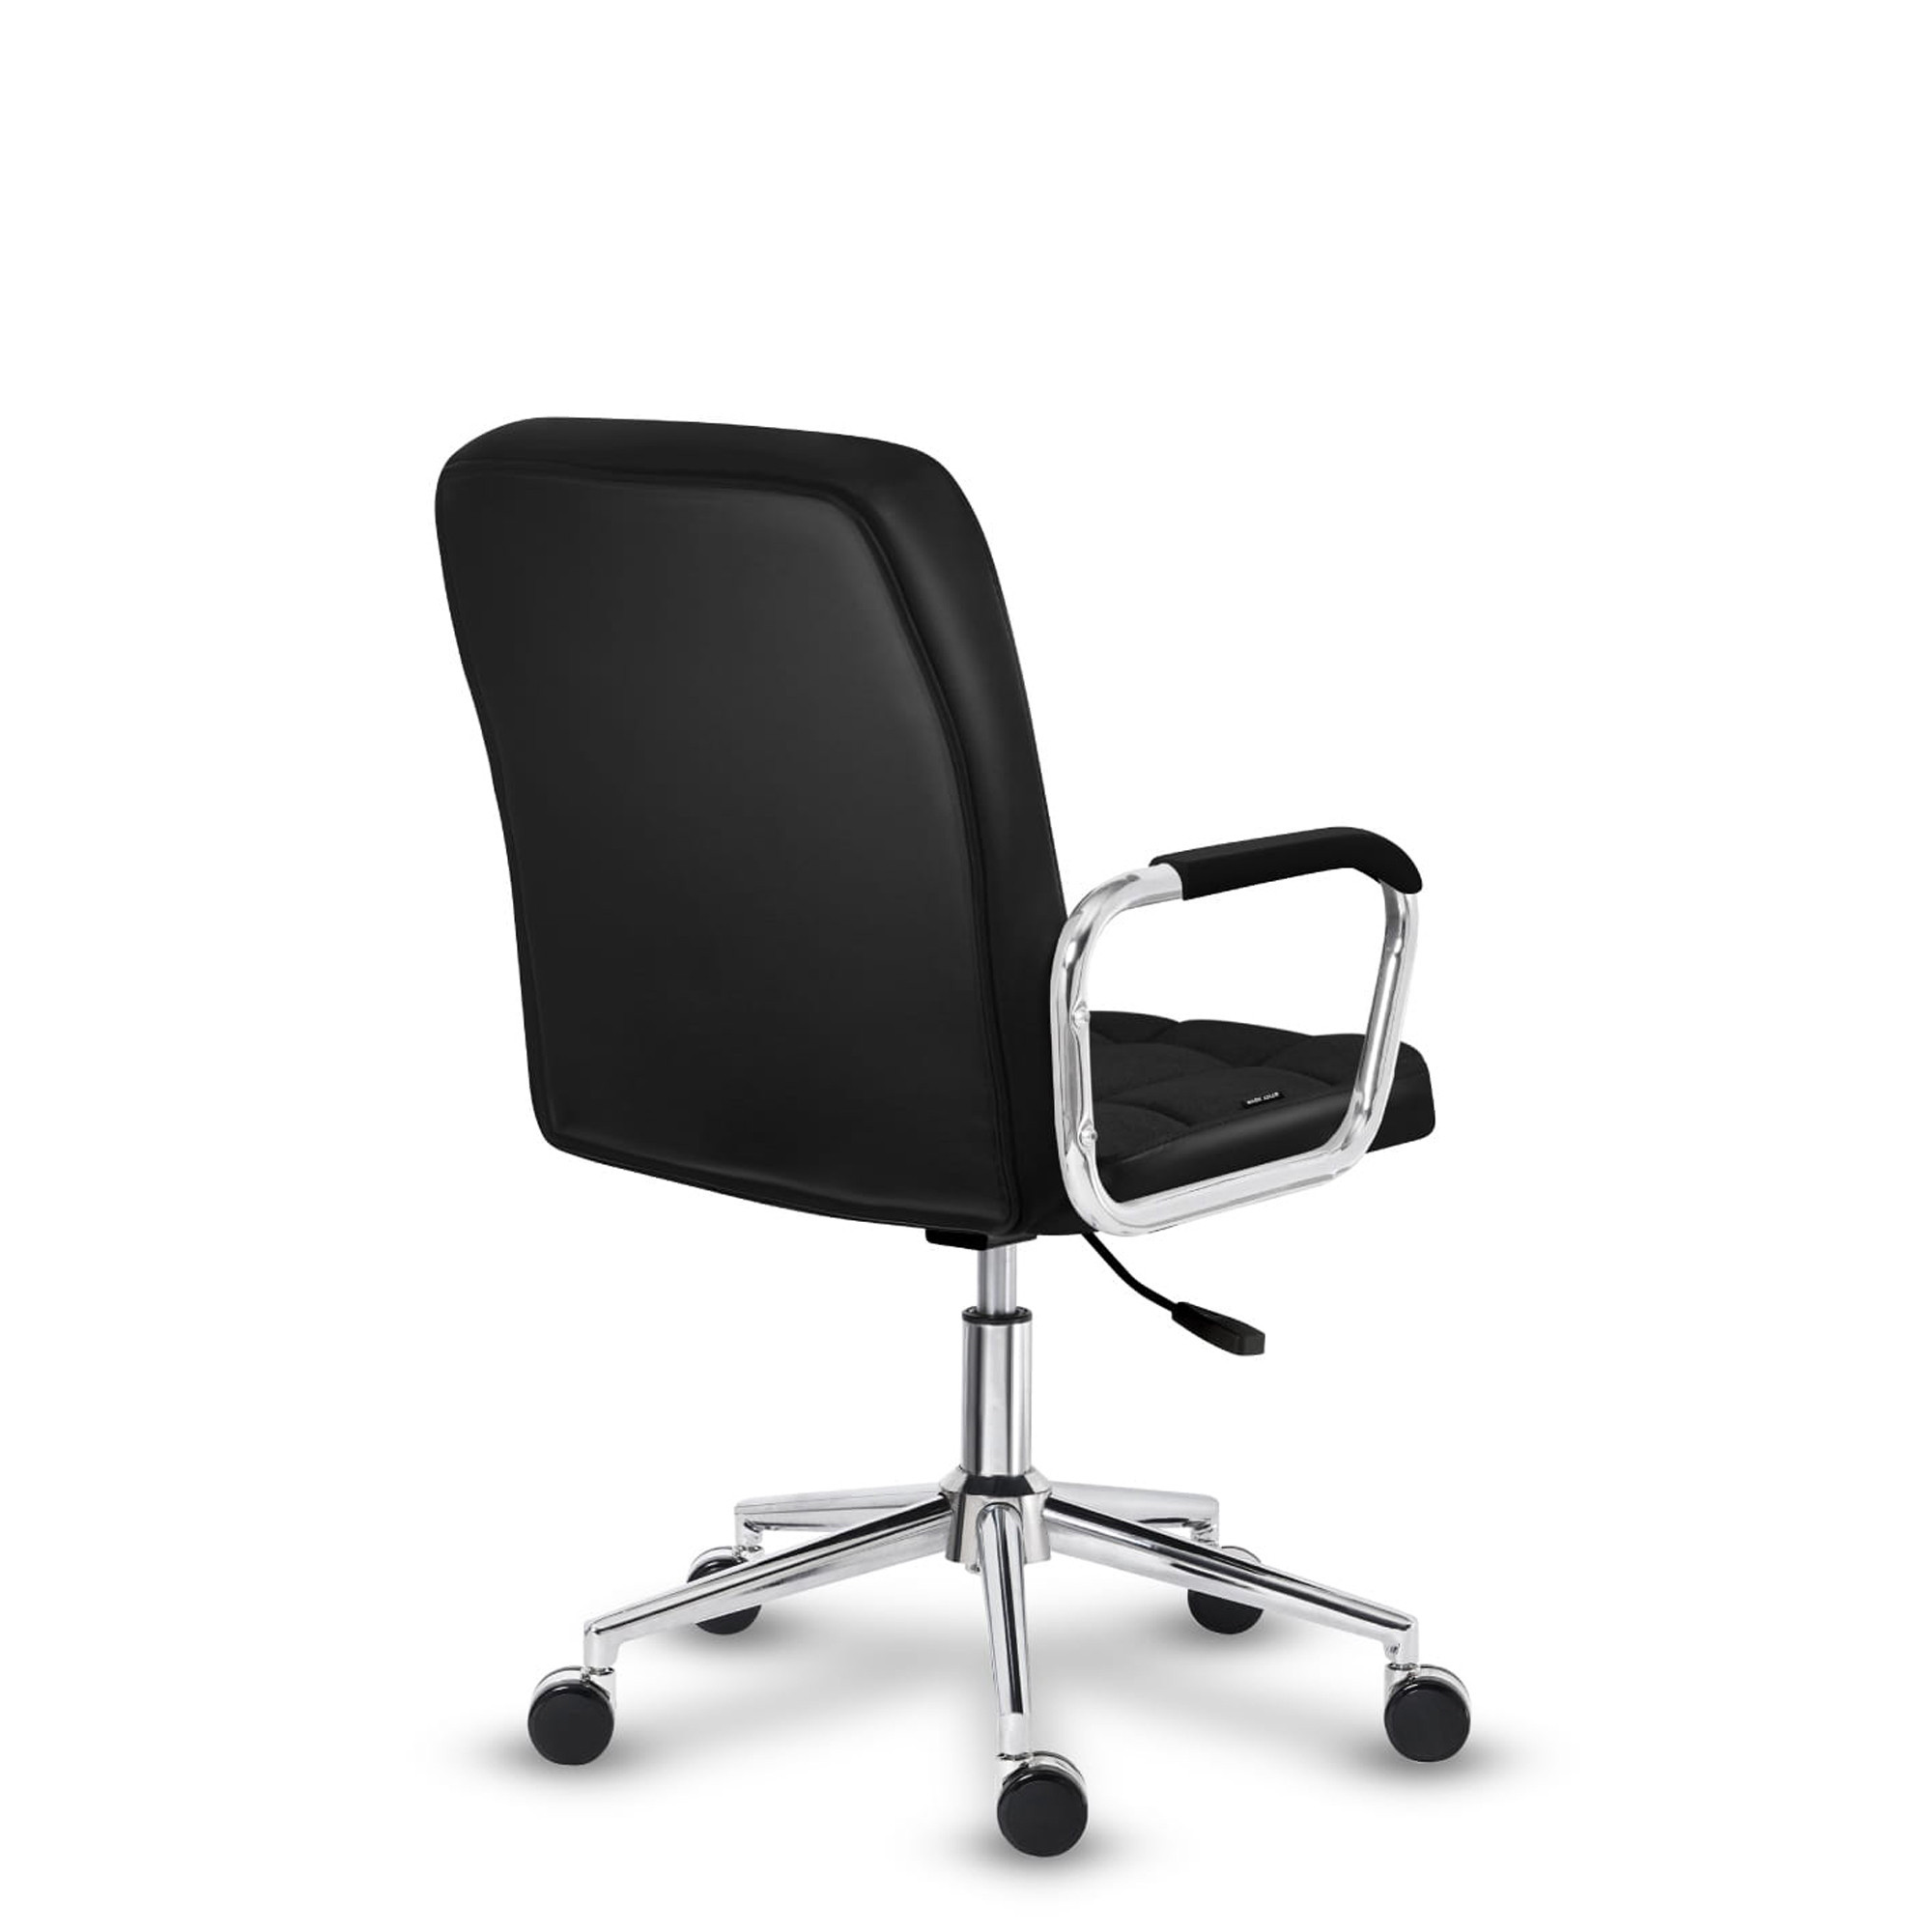 Kancelářská židle Mark Adler - Future 4.0 černá mesh